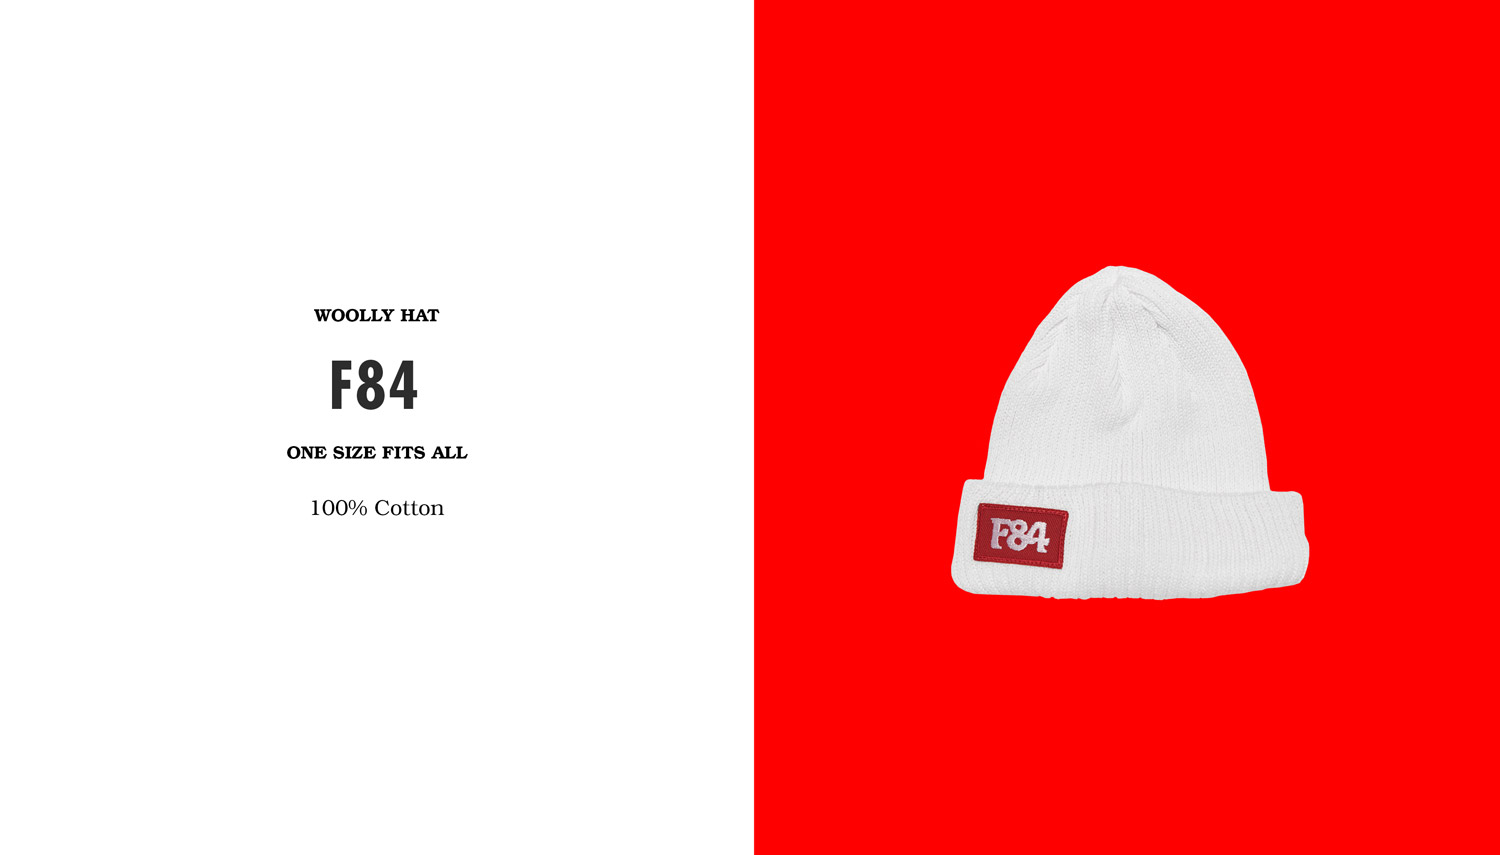 Fire1984 Woolly hat / f84